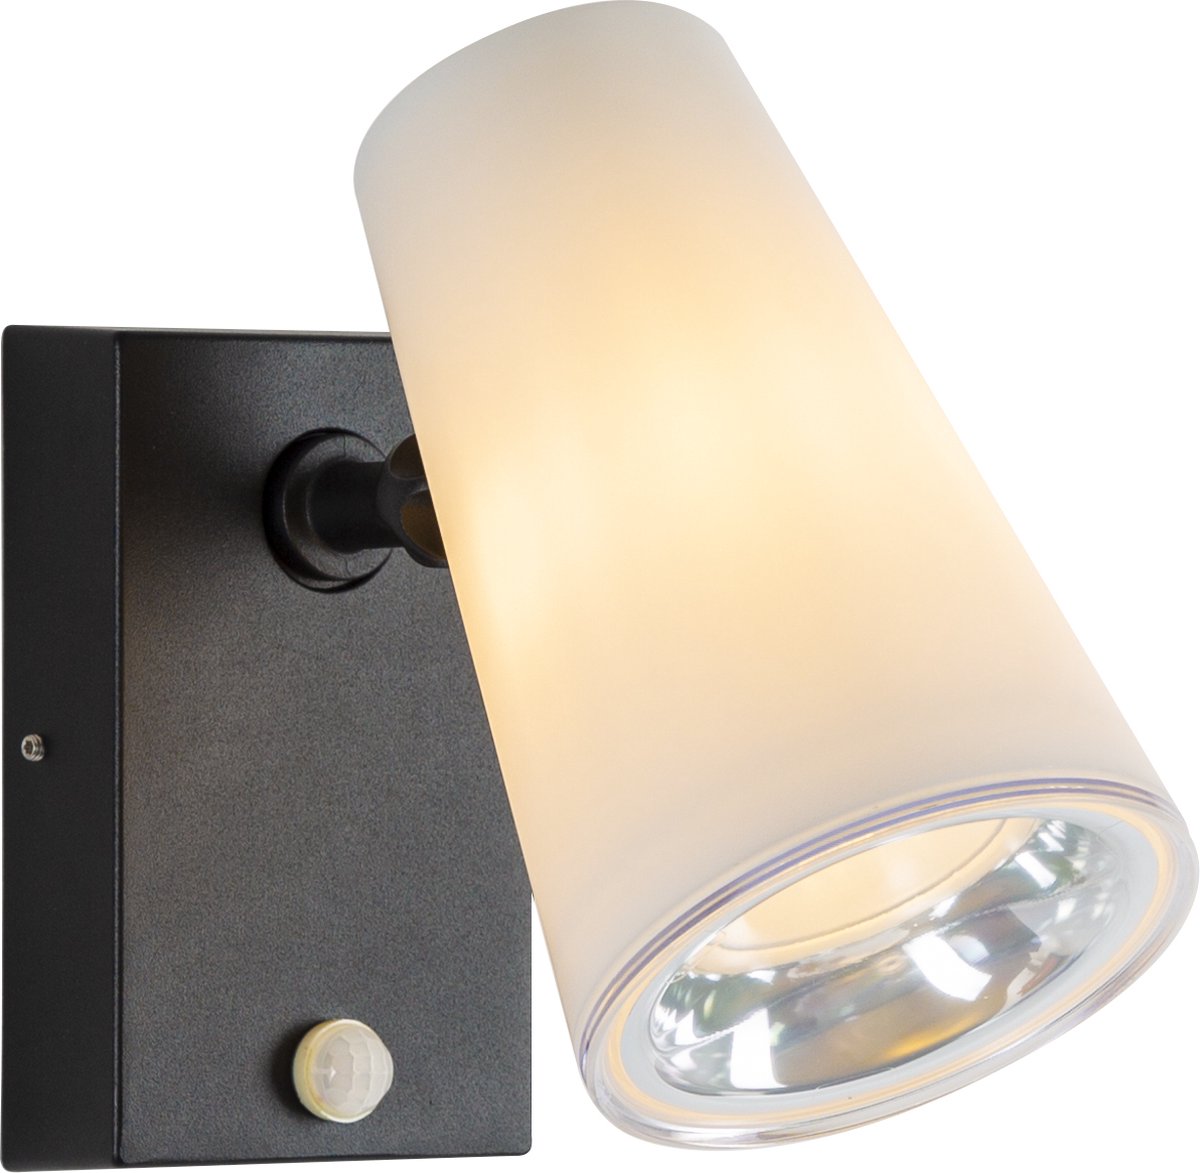 Buitenlamp met bewegingsmelder Spotter Melkglas E27 fitting sensor